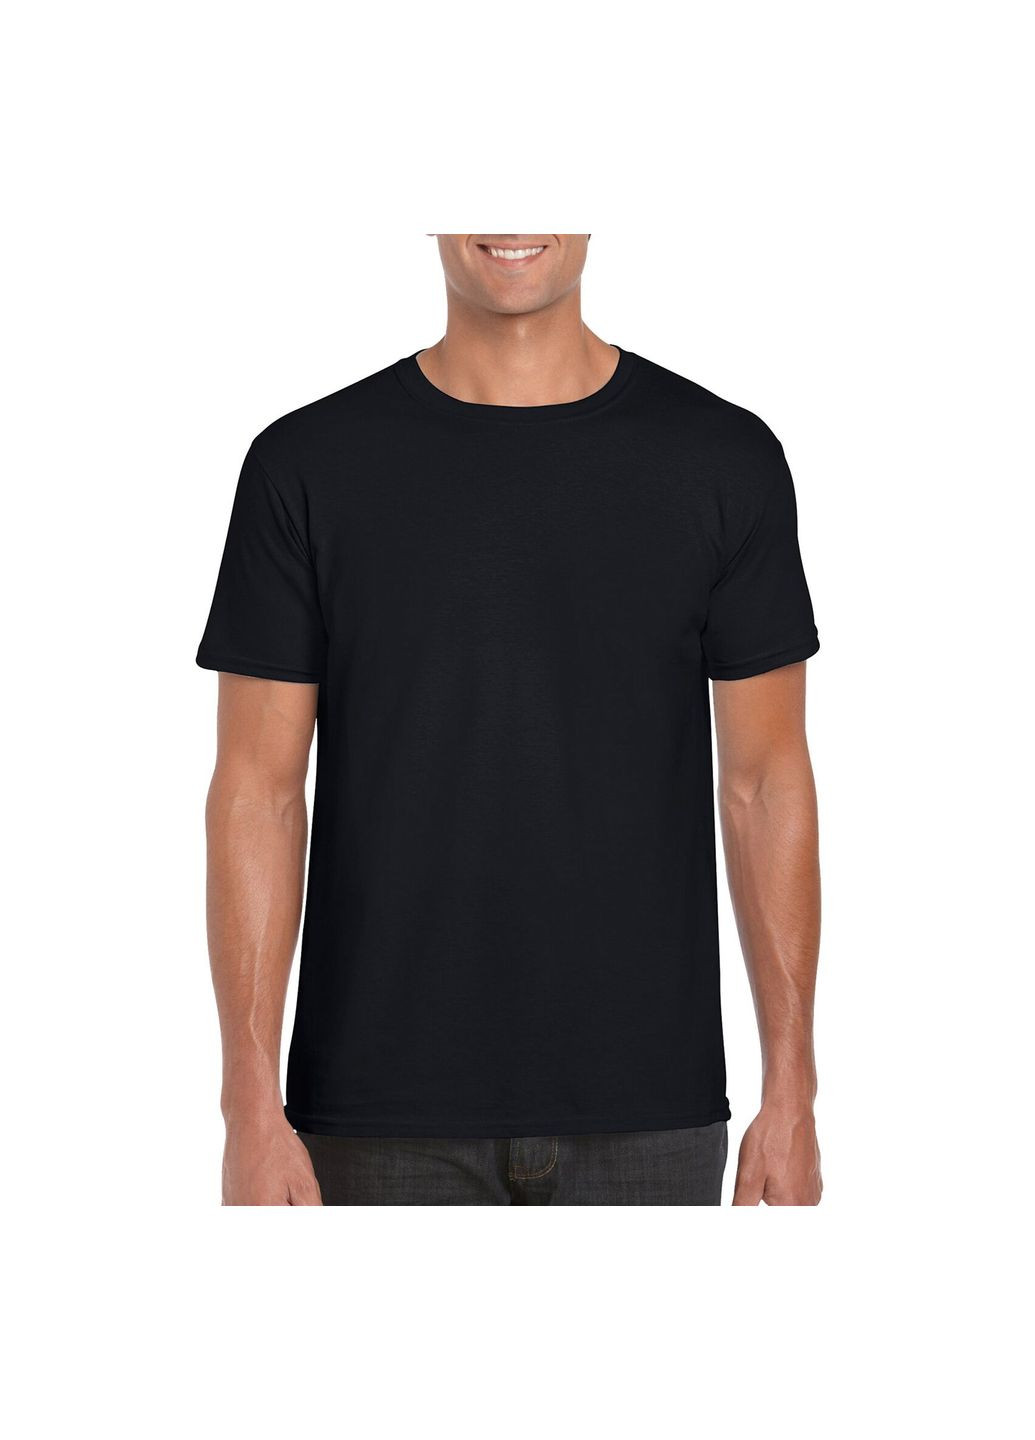 Чорна футболка чоловіча базова однотонна чорна 64000-426c з коротким рукавом Gildan Softstyle